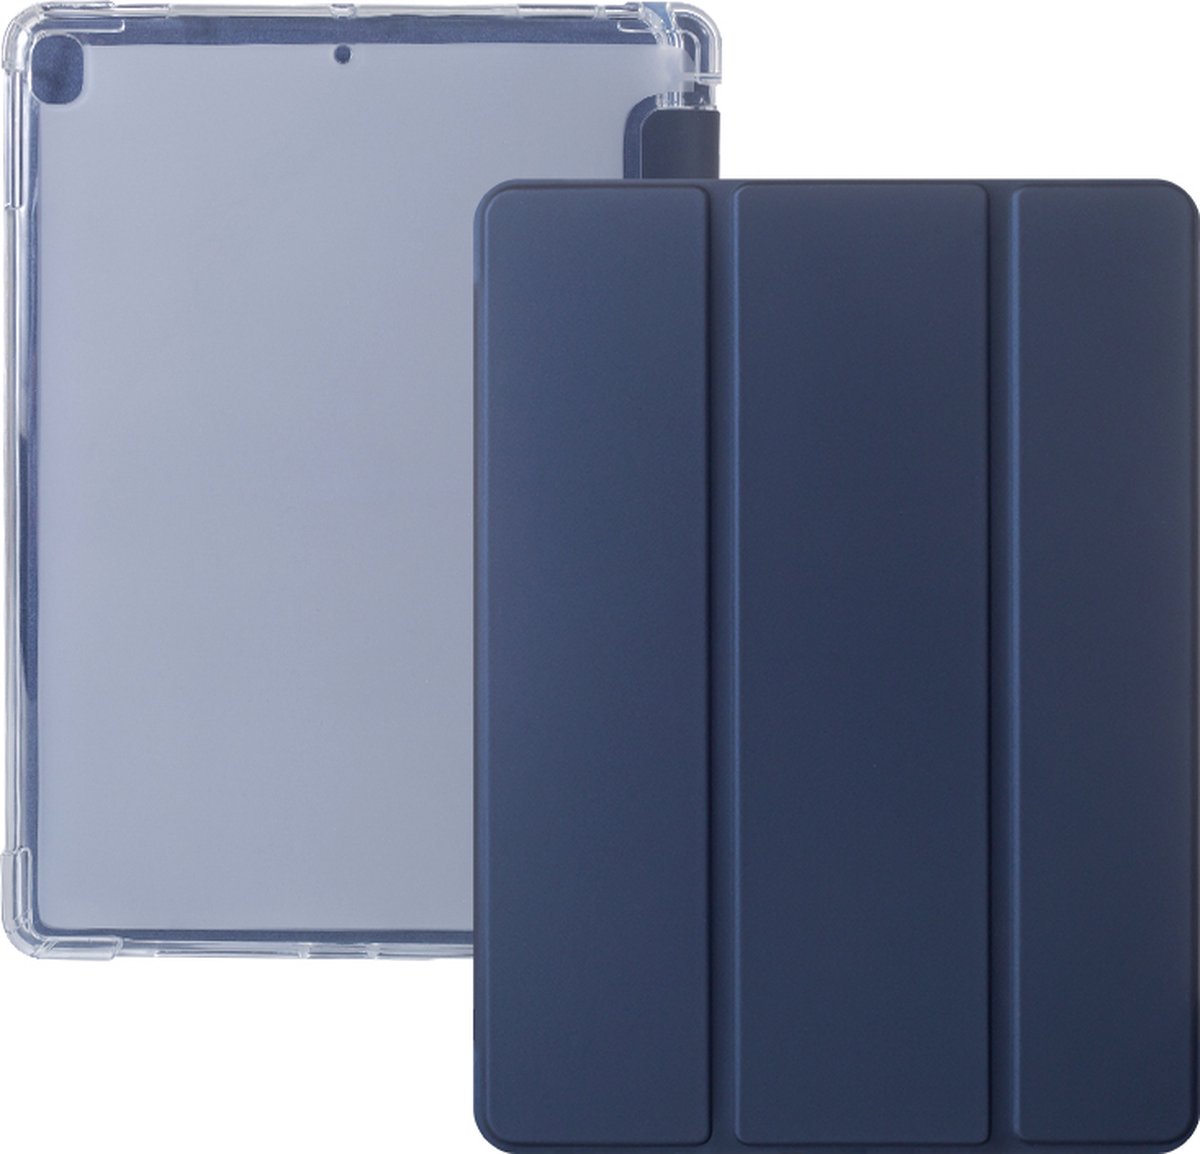 iPad 2021 Hoes - iPad 10.2 2019/2020/2021 Case - iPad 10.2 Hoesje Donker Blauw - Clear Back Folio Cover met Apple Pencil Opbergvak - Hoesje voor iPad 10.2 7e, 8e en 9e generatie